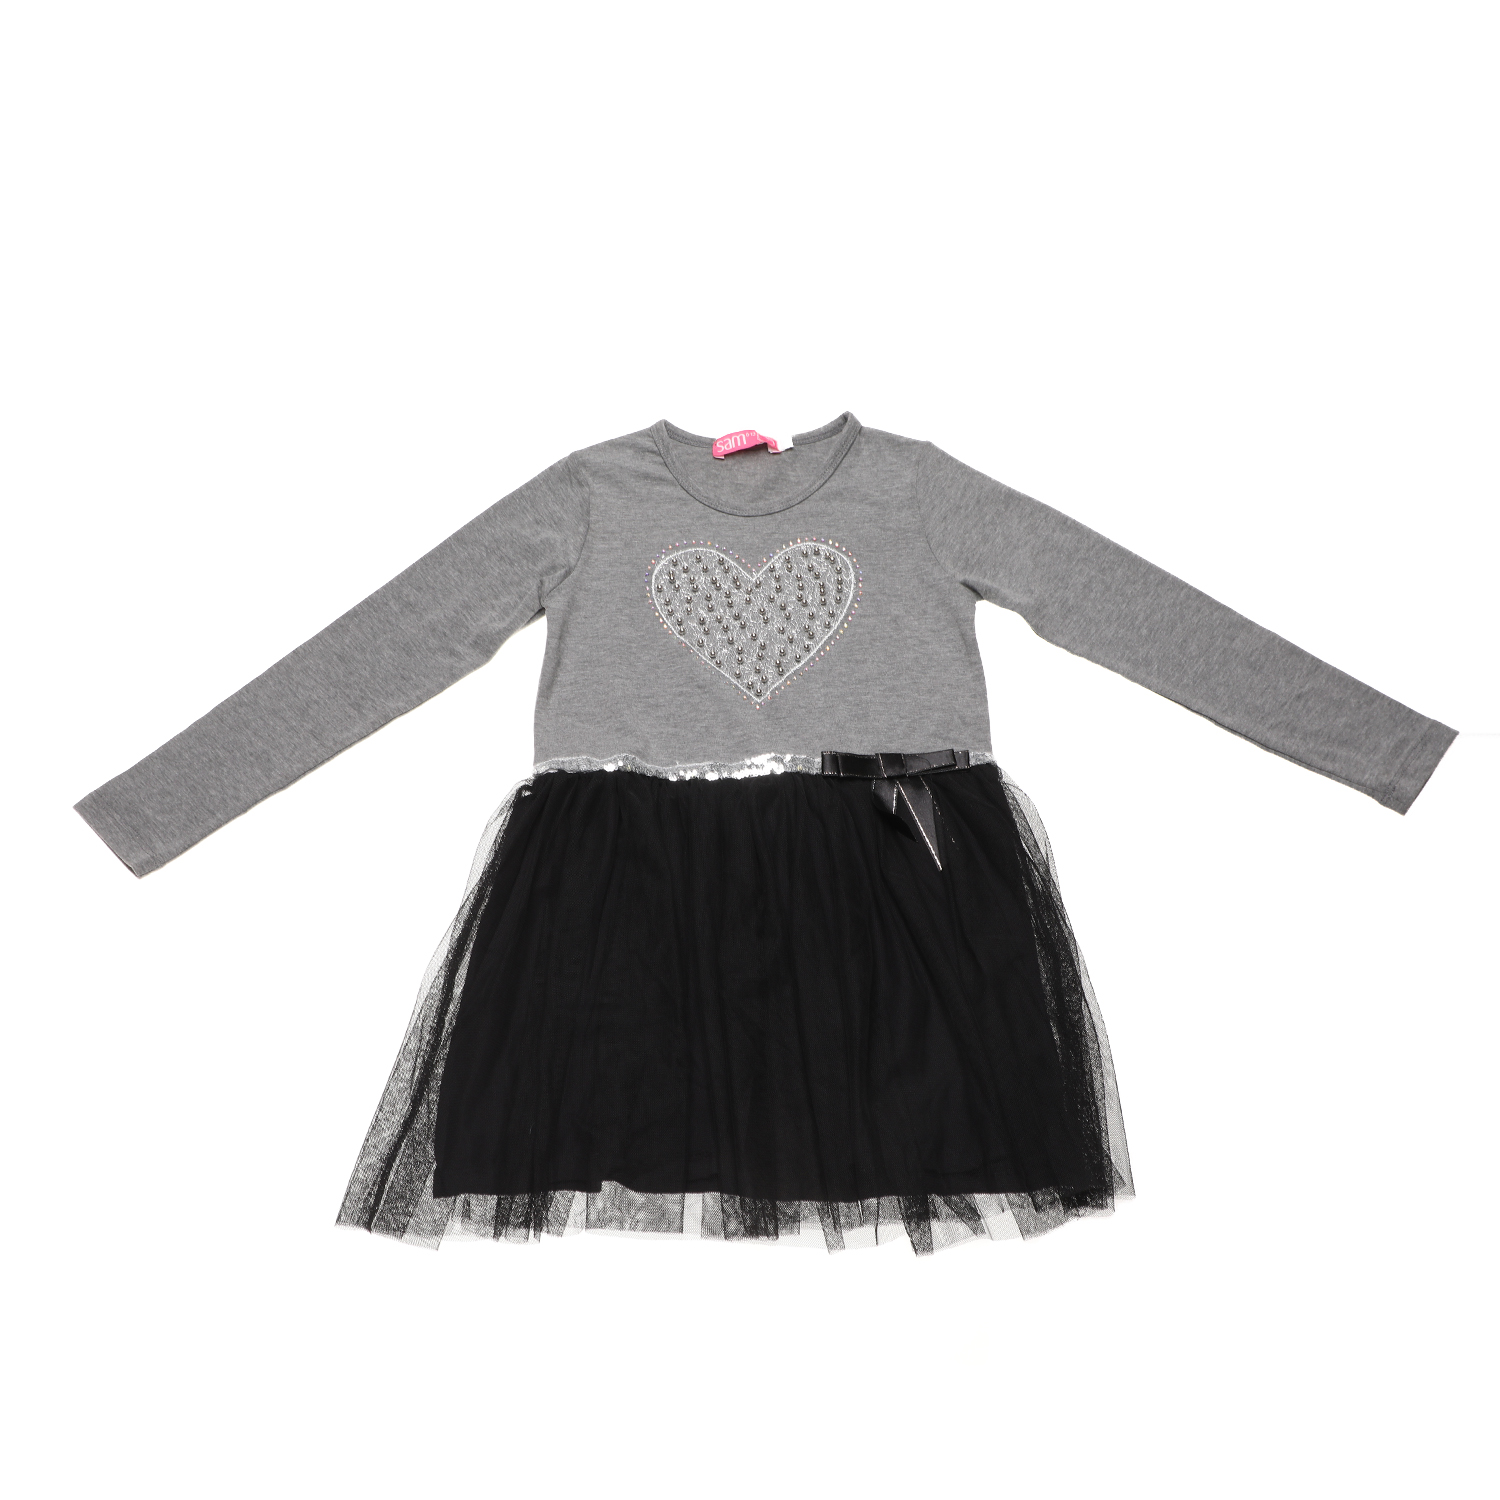 Παιδικά/Girls/Ρούχα/Φορέματα Μακρυμάνικα SAM 0-13 - Παιδικό φόρεμα SAM 0-13 μαύρο γκρι